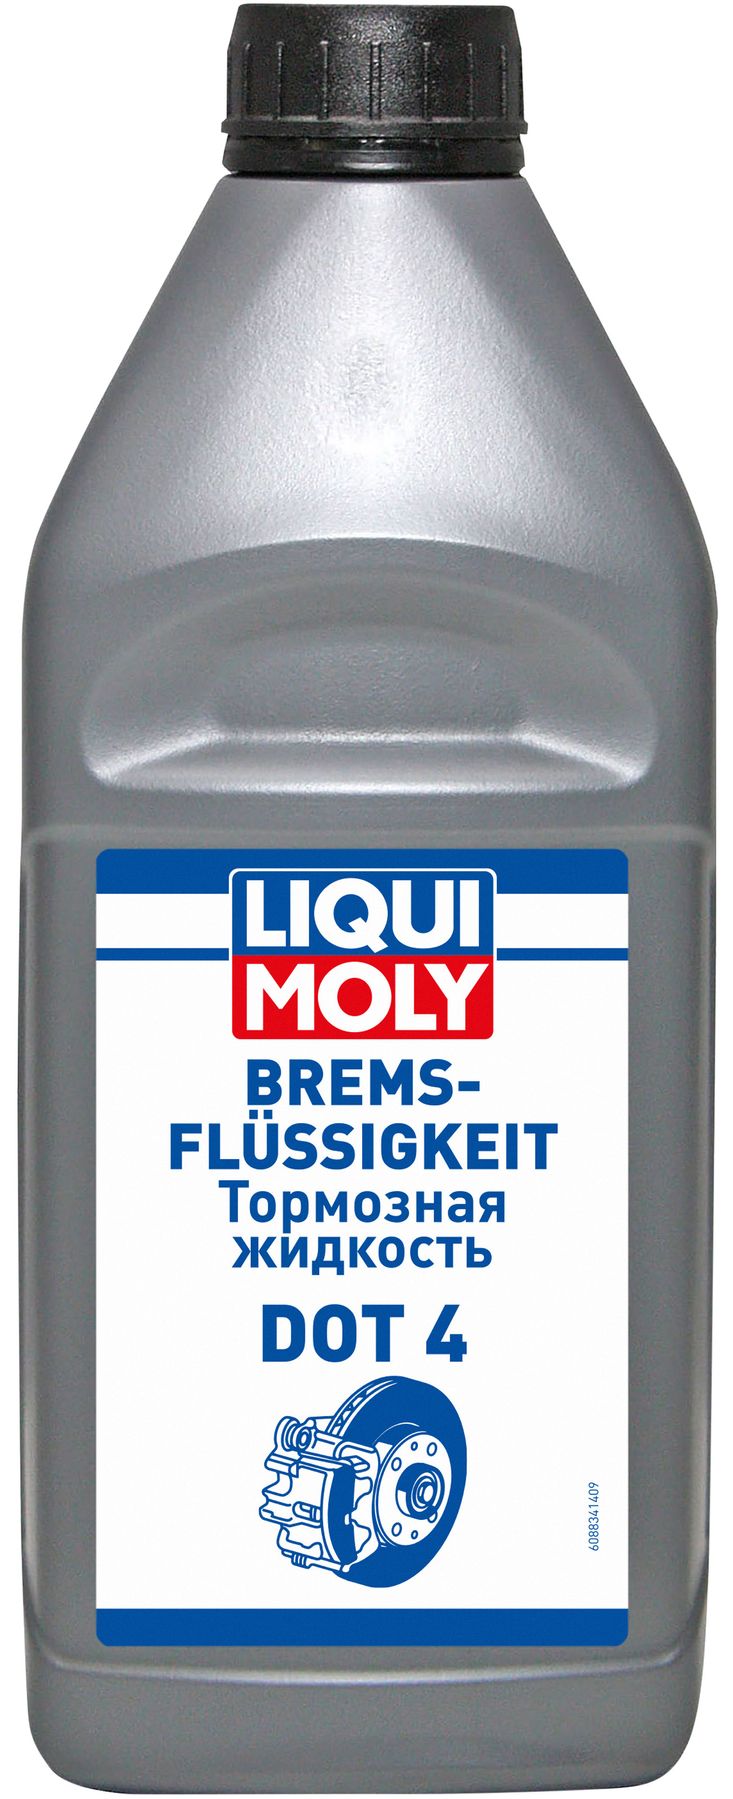 Тормозная жидкость Liqui Moly DOT 4, 1 литр (8834)